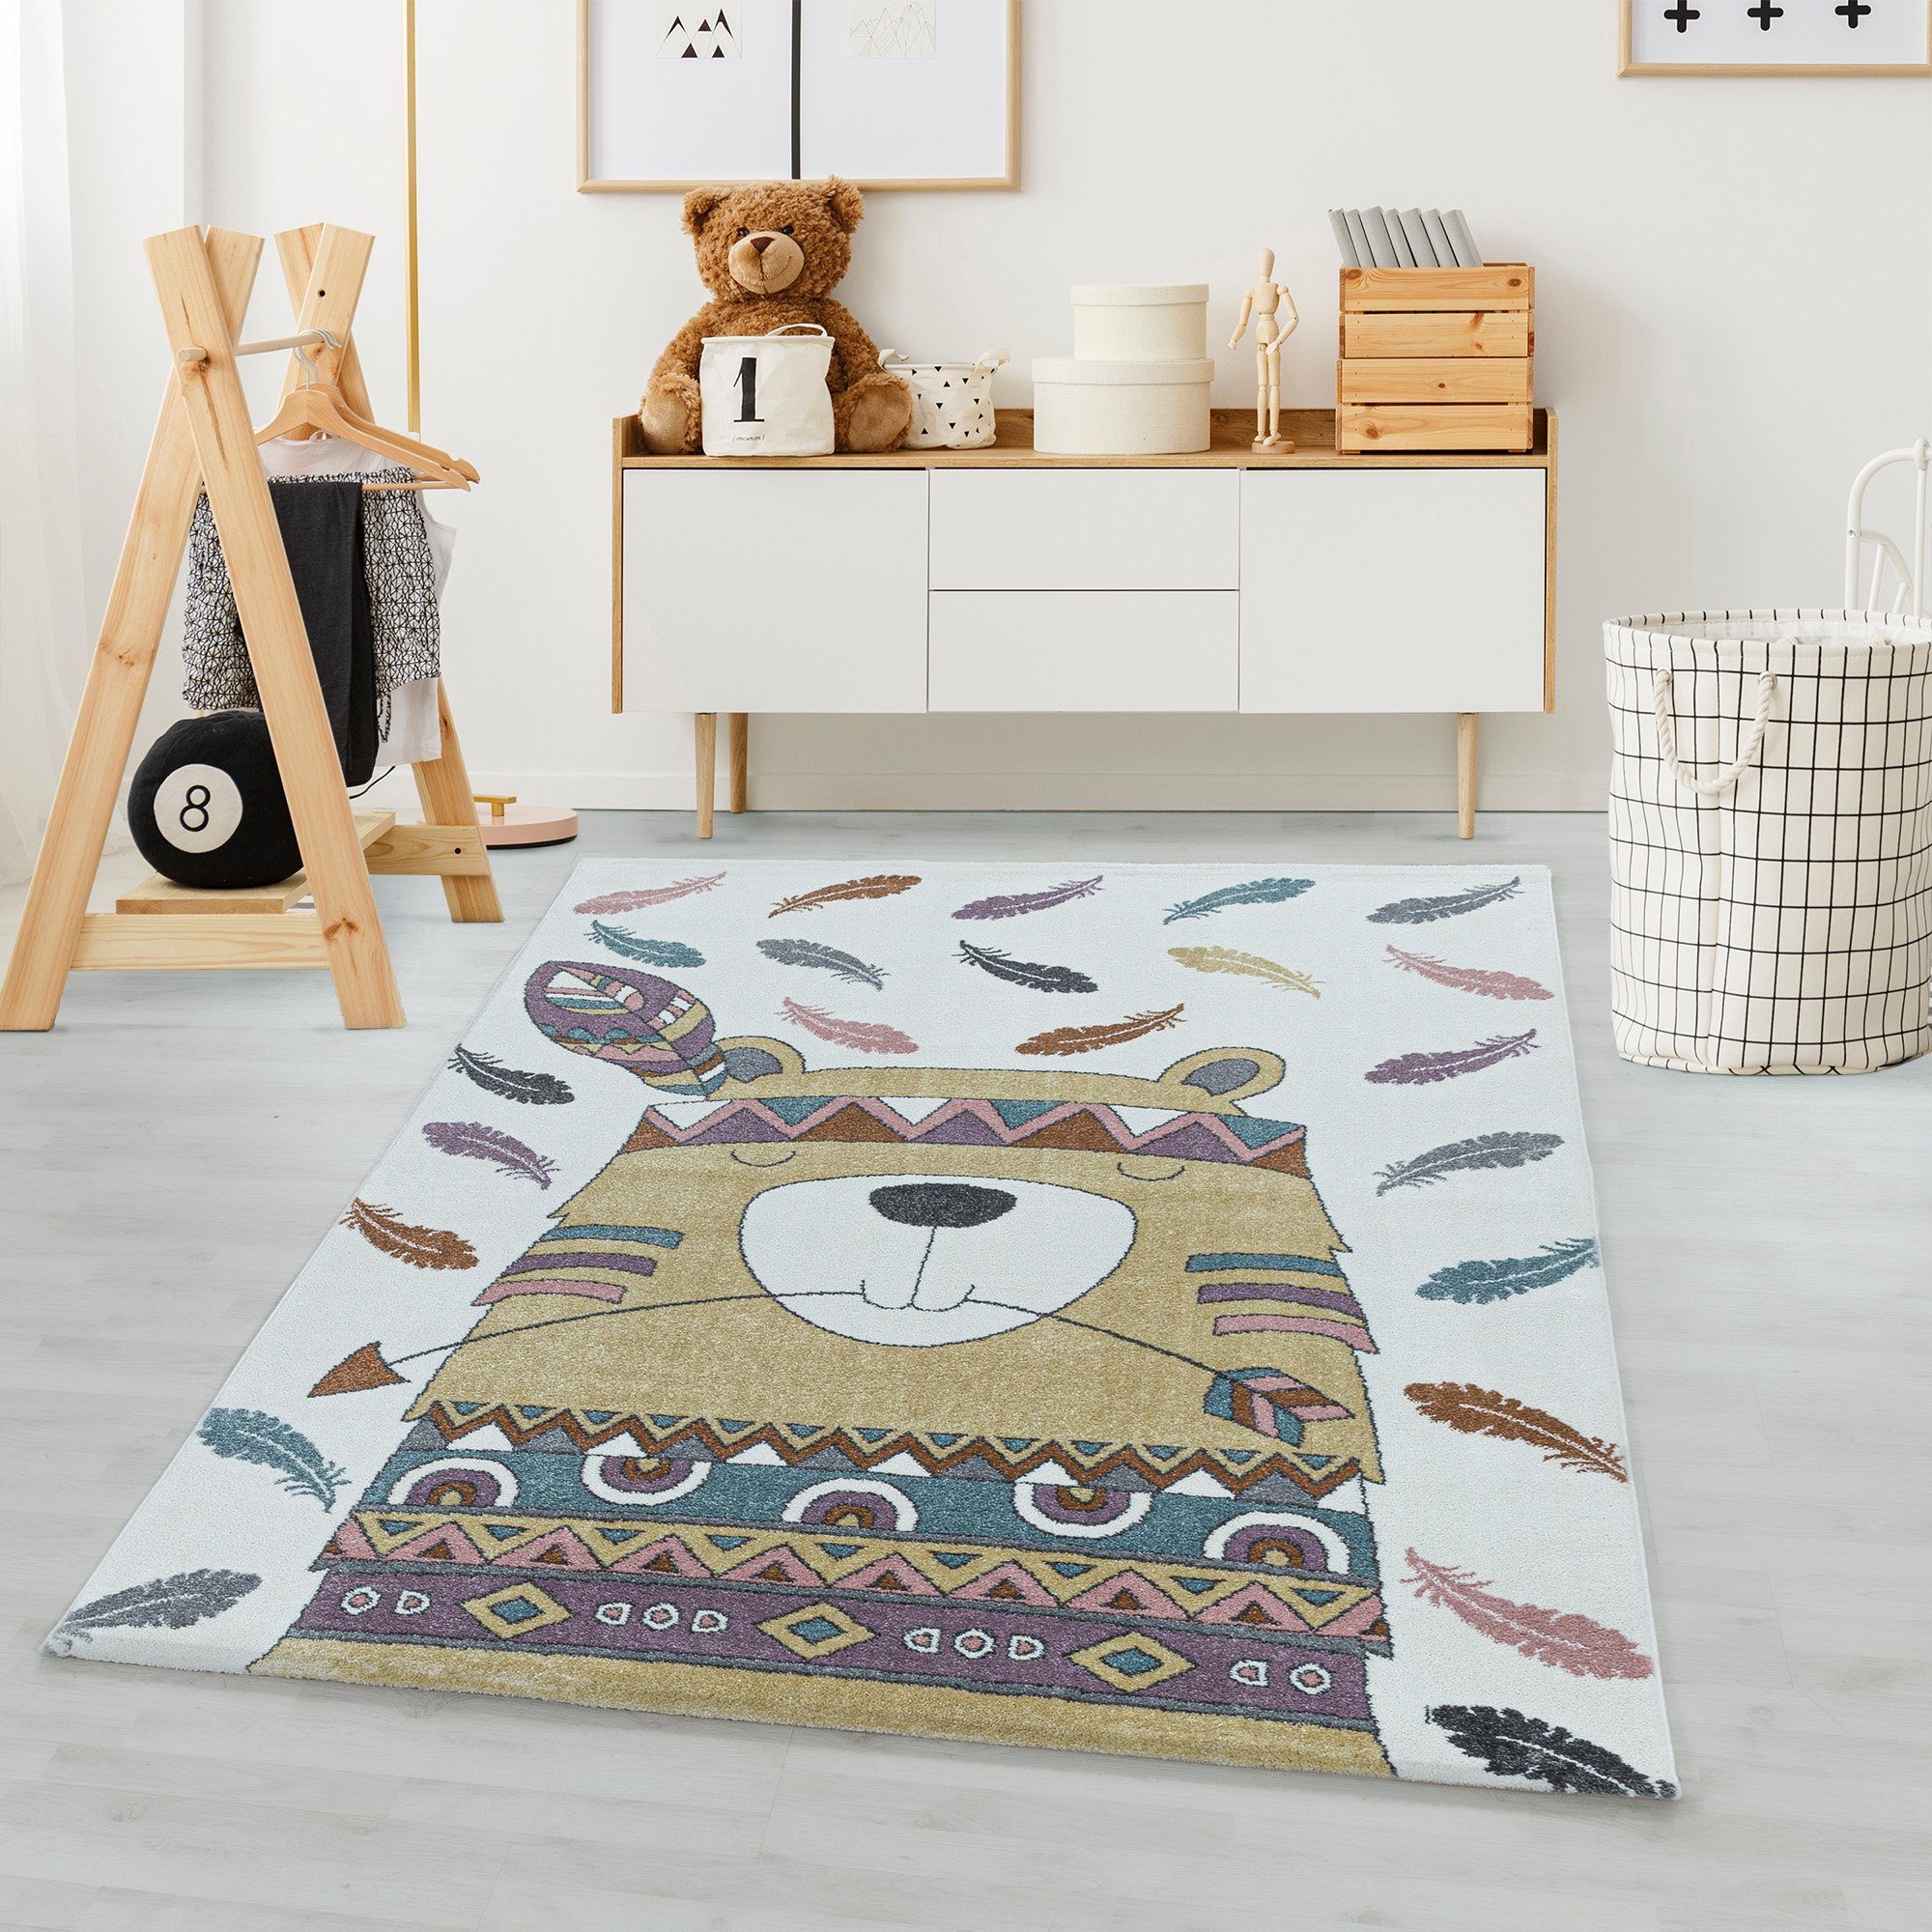 Kinderteppich Bär Design, Carpetsale24, Läufer, Höhe: 11 mm, Teppich Kinderzimmer Bären Design Gelb Teppich Pflegeleicht | Kurzflor-Teppiche